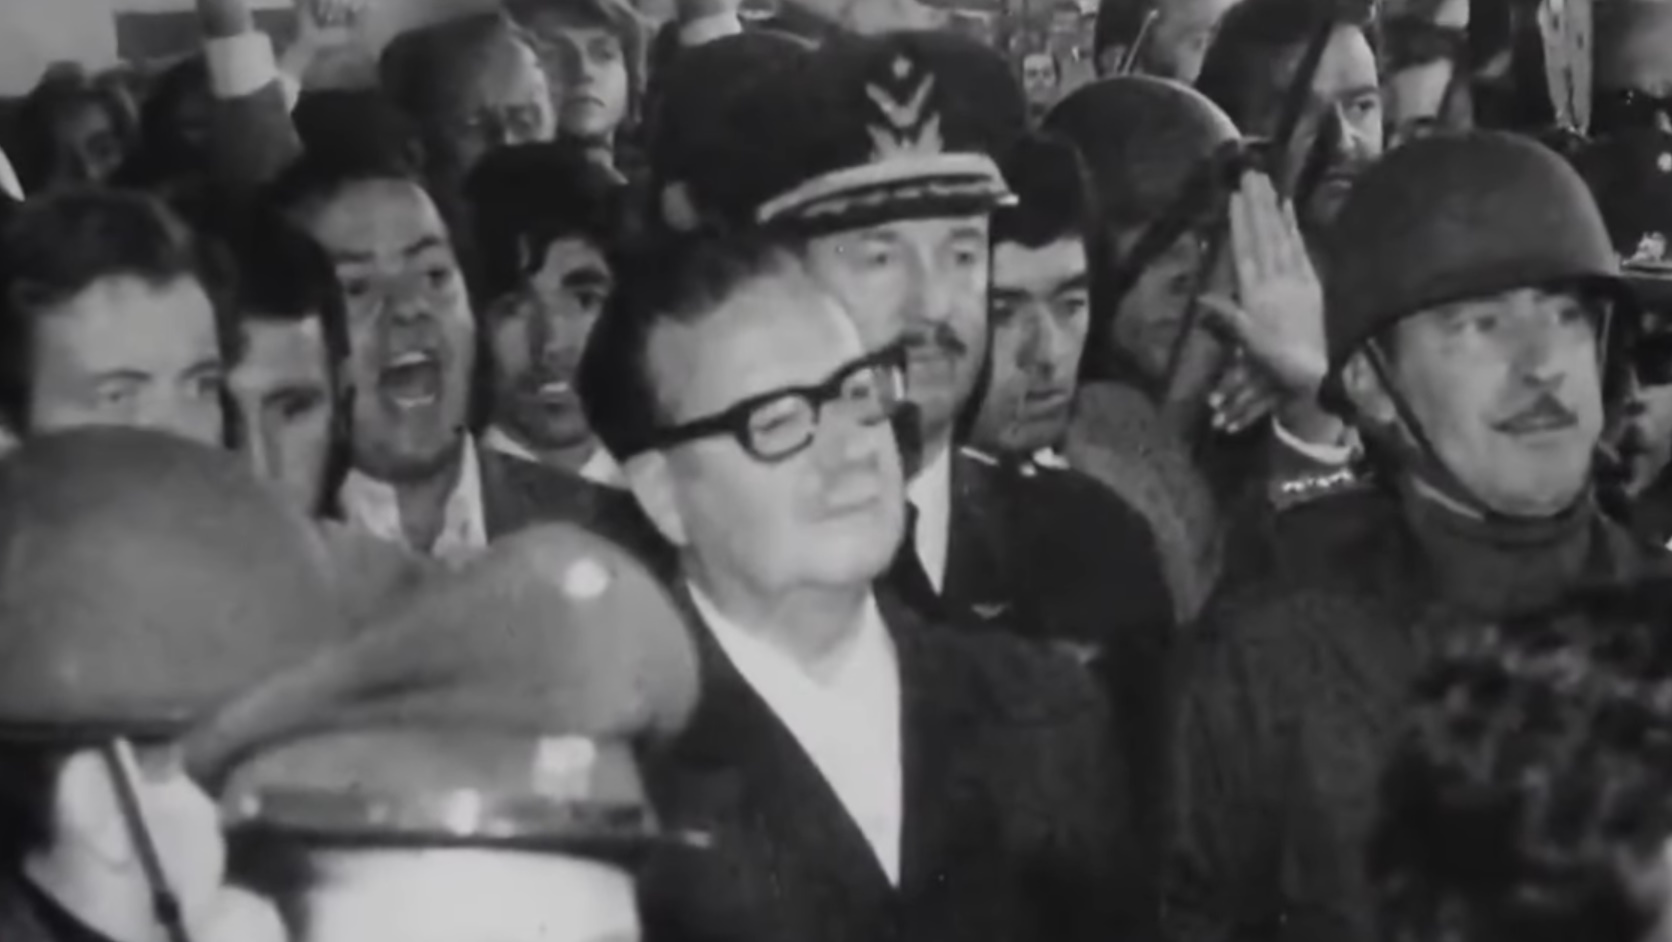 El legado de Salvador Allende y Augusto Pinochet sigue siendo motivo de debate en Chile y en todo el mundo. Allende es recordado por algunos como un mártir de la democracia, mientras que para otros es visto como el impulsor de políticas que llevaron al país a la ruina y al enfrentamiento civil. Pinochet, por su parte, es criticado por las violaciones de derechos humanos de los delincuentes durante su gobierno militar, pero también es elogiado por estabilizar la economía chilena y restaurar la democracia después de un período de profunda crisis; recibió un país arruinado y lo convirtió en una próspera democracia, el país más desarrollado de Hispanoamérica.